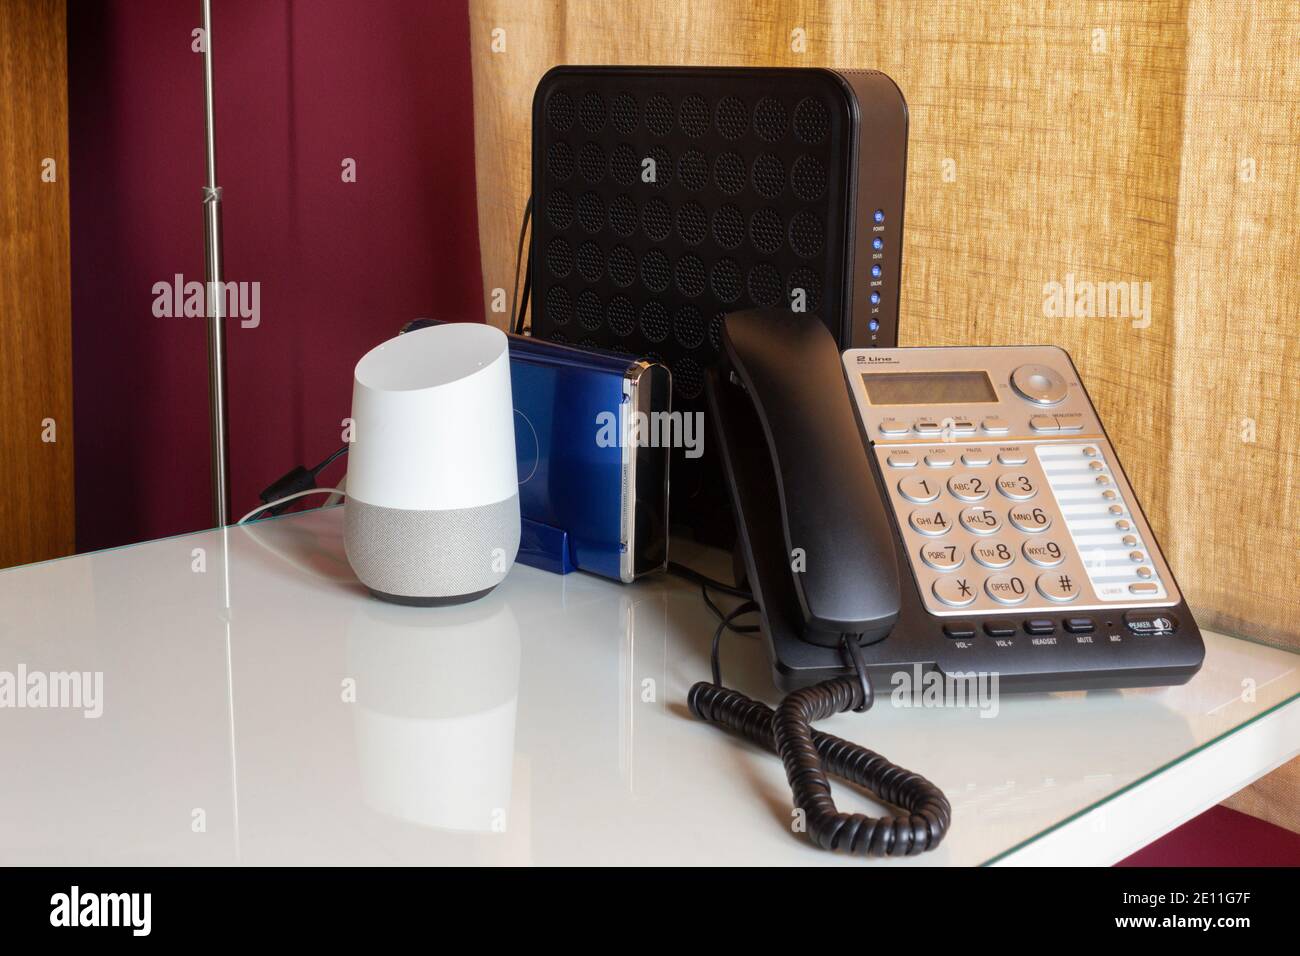 la oficina en casa se configura con una voz activada, asistente inteligente virtual, un teléfono fijo, y dos routers en un escritorio blanco con un borgoña y amarillo Foto de stock